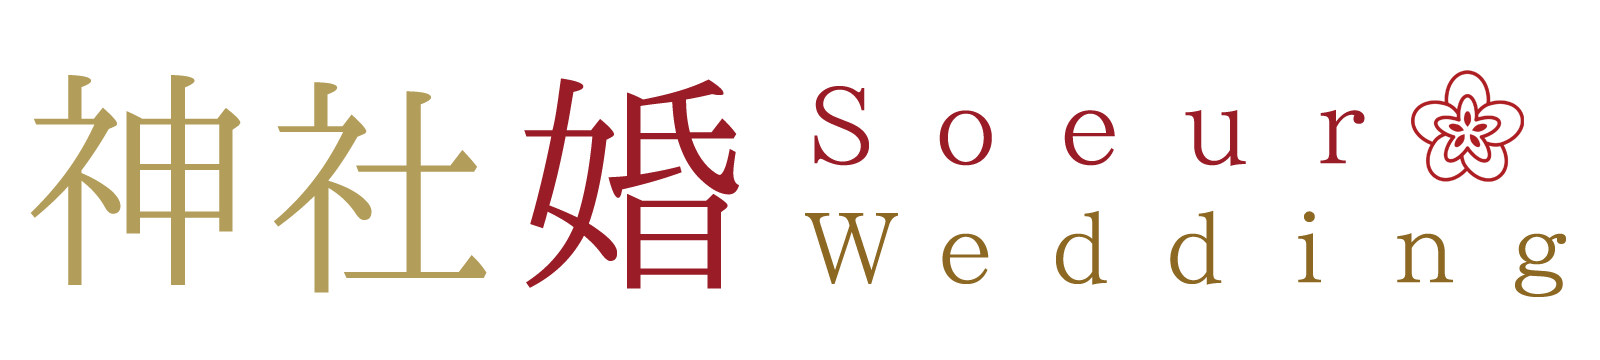 Soeur神社婚～札幌のウェディング相談